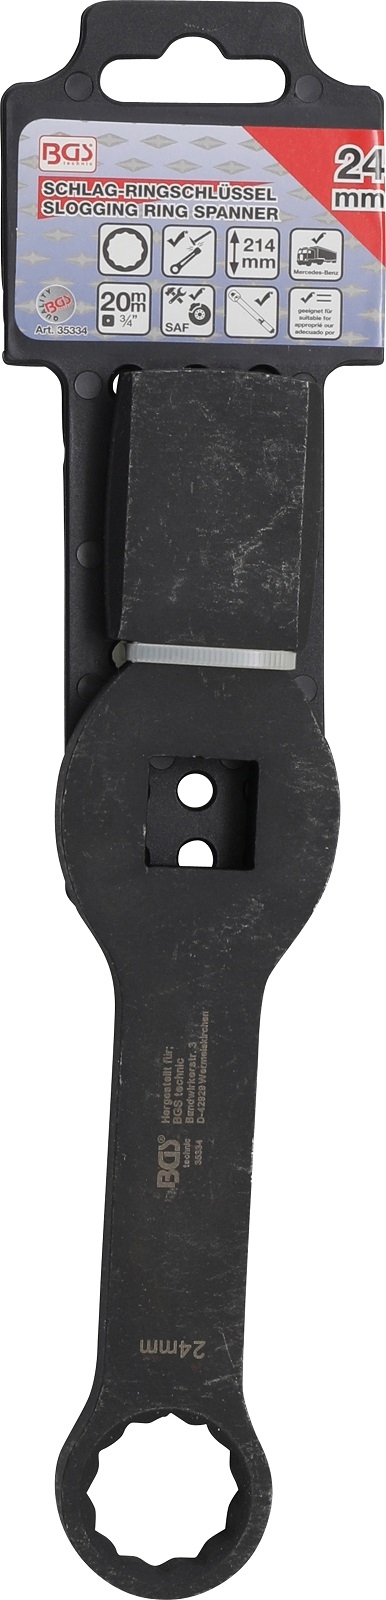 Schlag-Ringschlüssel | Zwölfkant | mit 2 Schlagflächen | SW 24 mm - BGS 35334